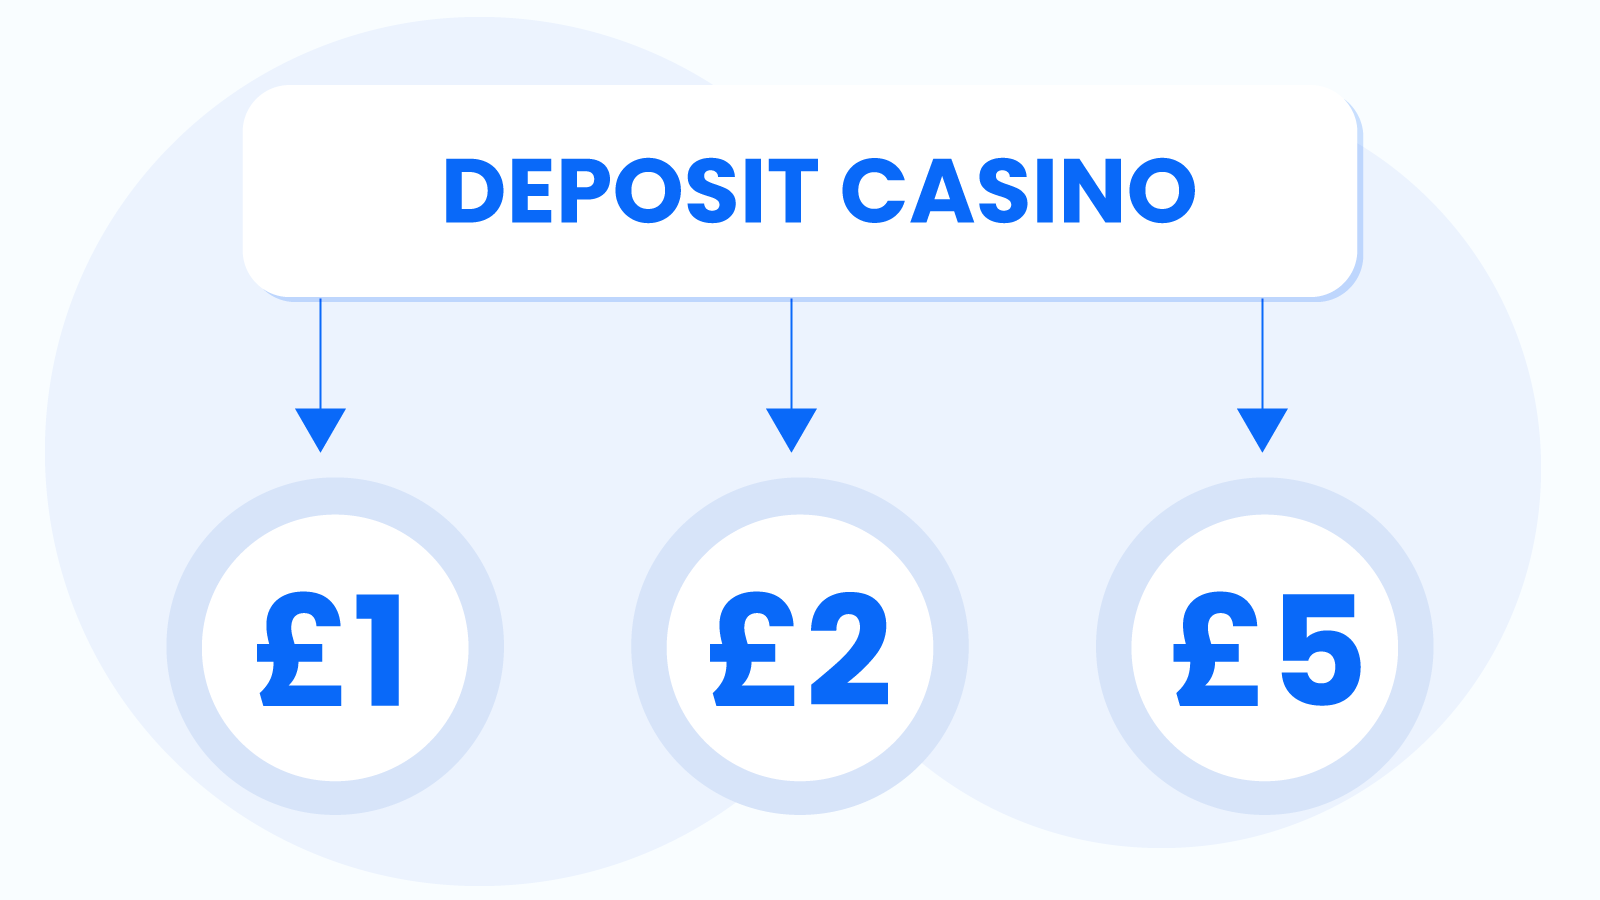 Other Minimum Deposit Casino Options